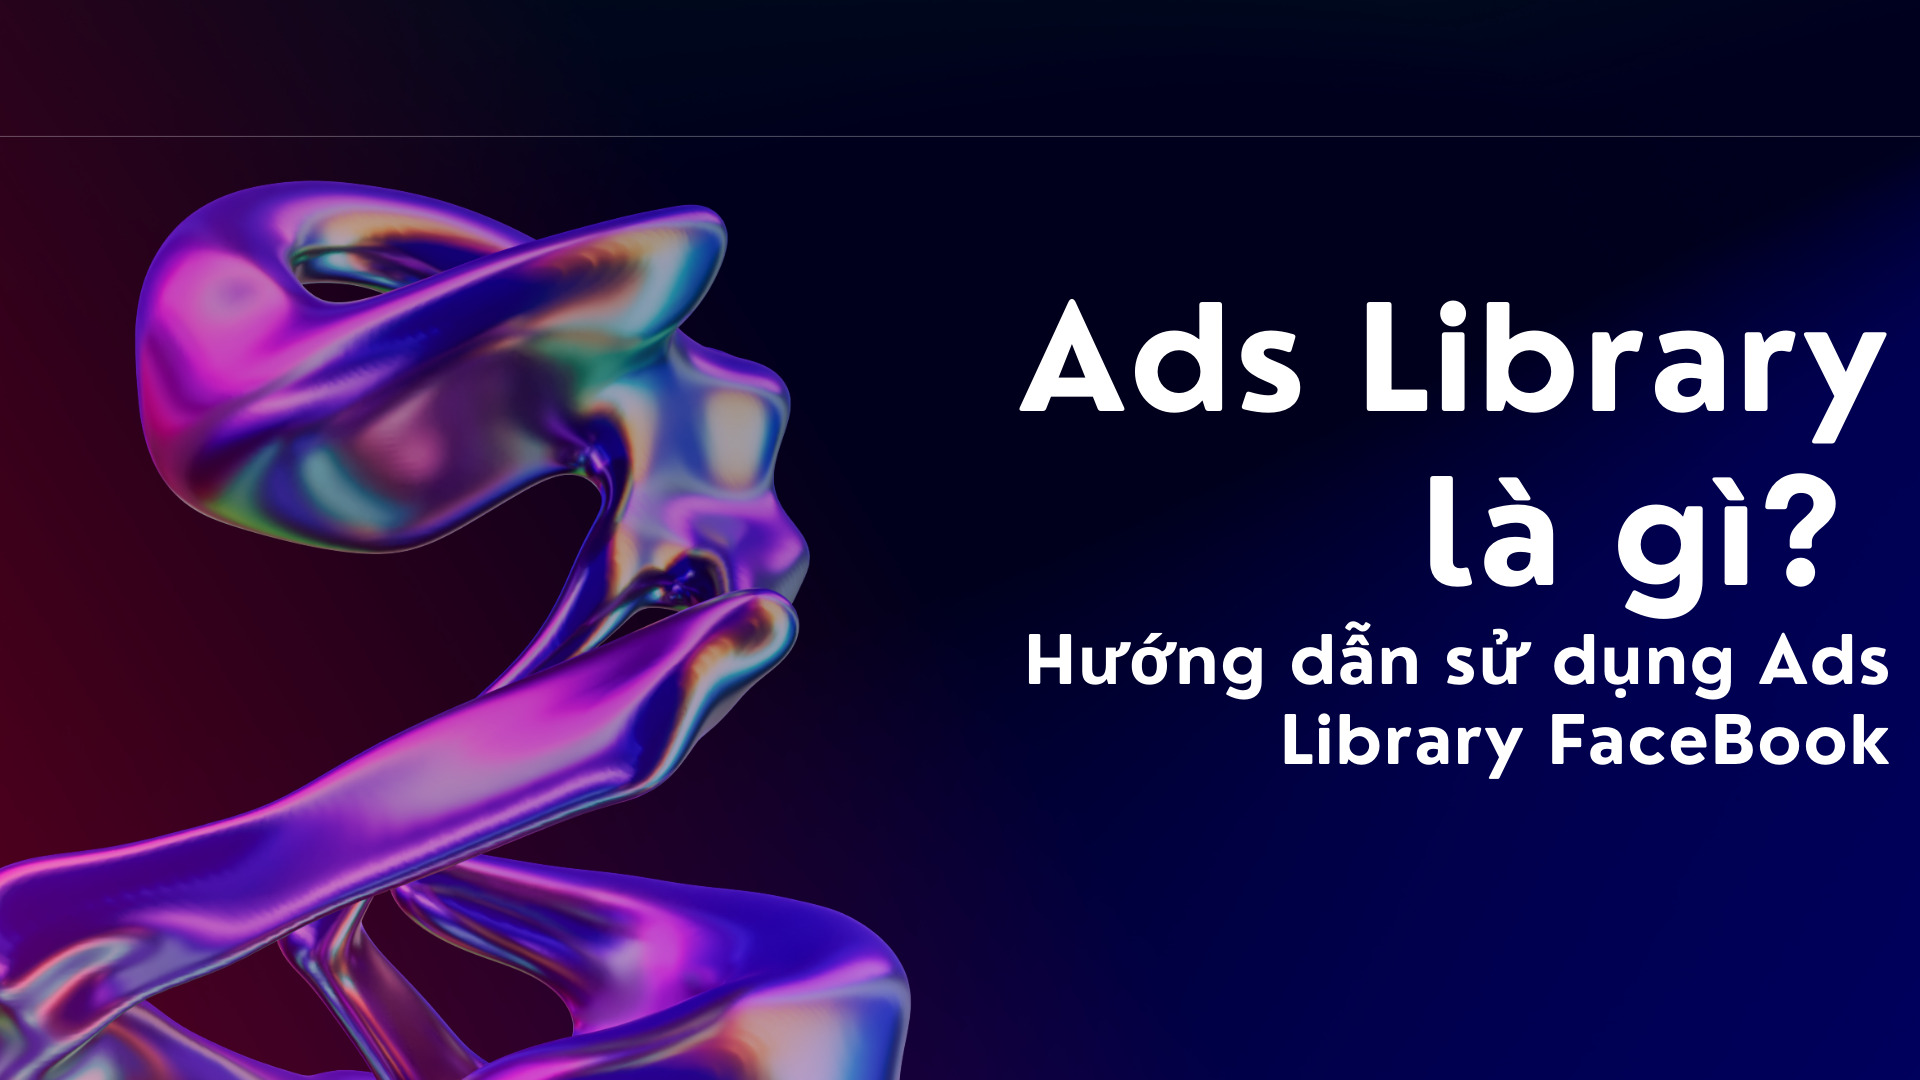 Ads Library là gì? Hướng dẫn sử dụng Ads Library FaceBook